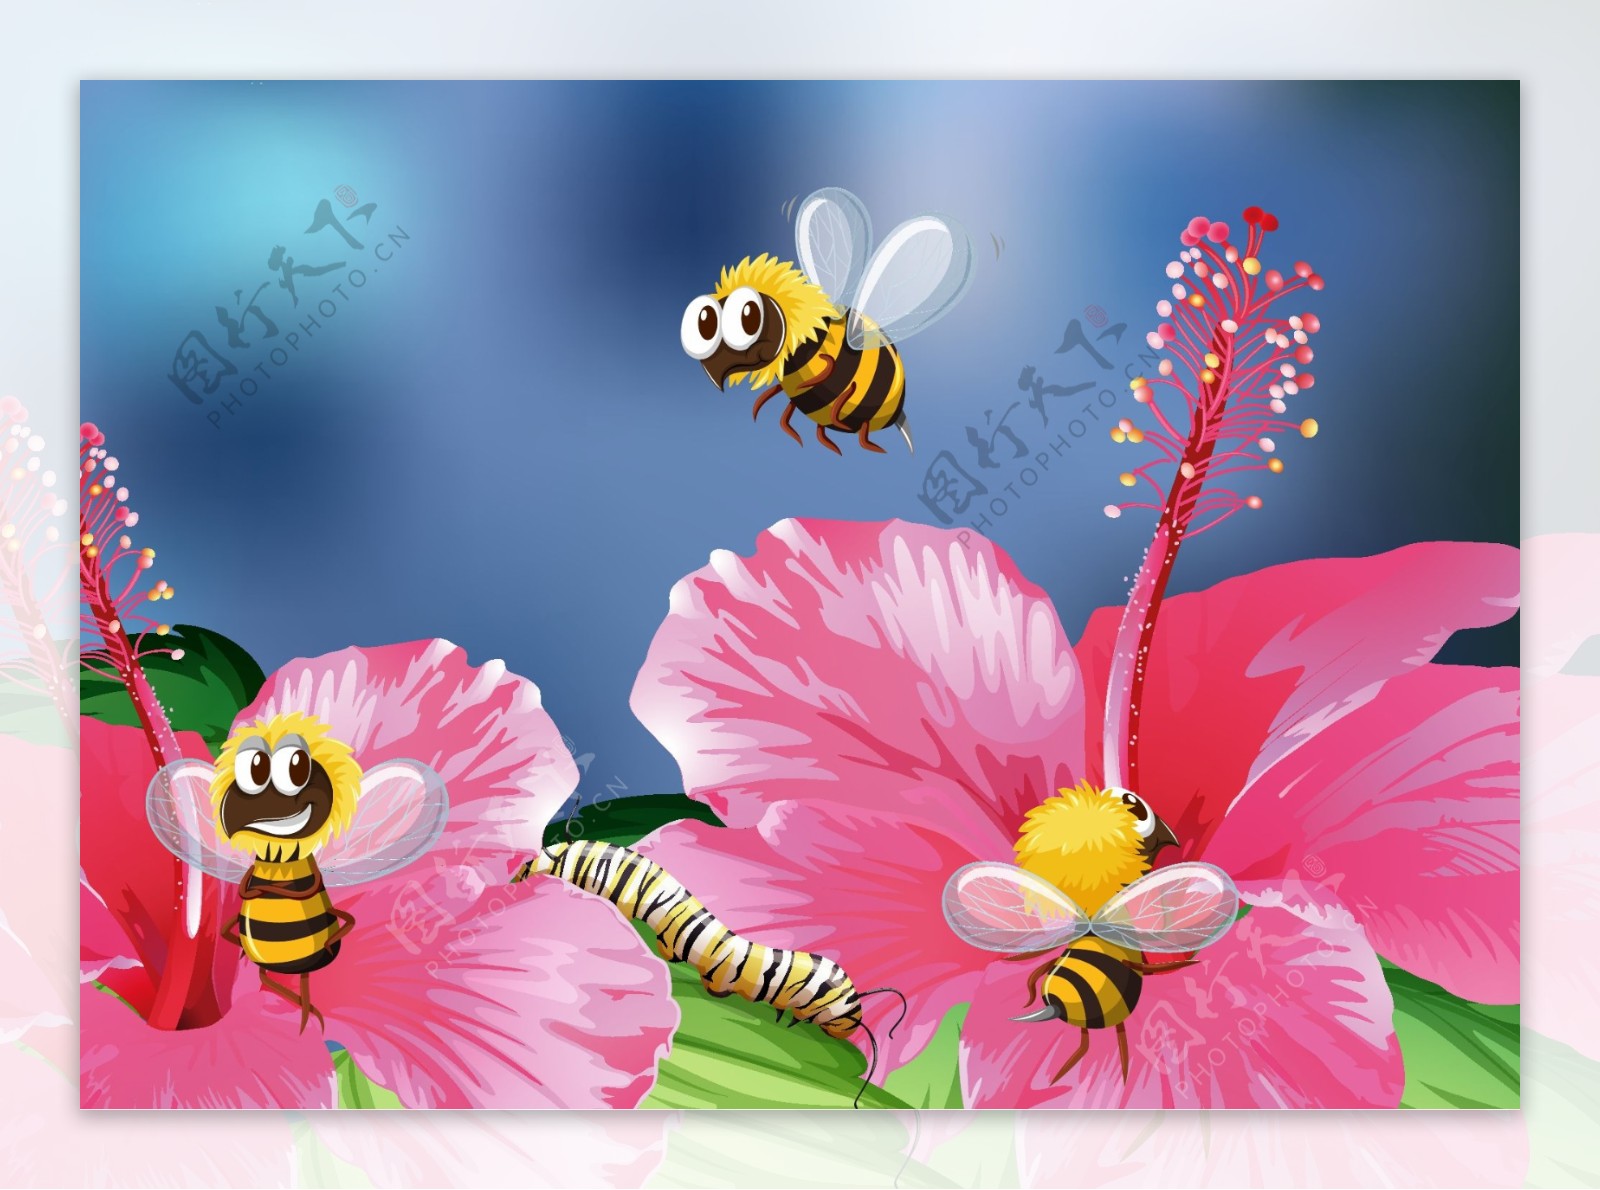 蜜蜂在花朵上采蜜插图